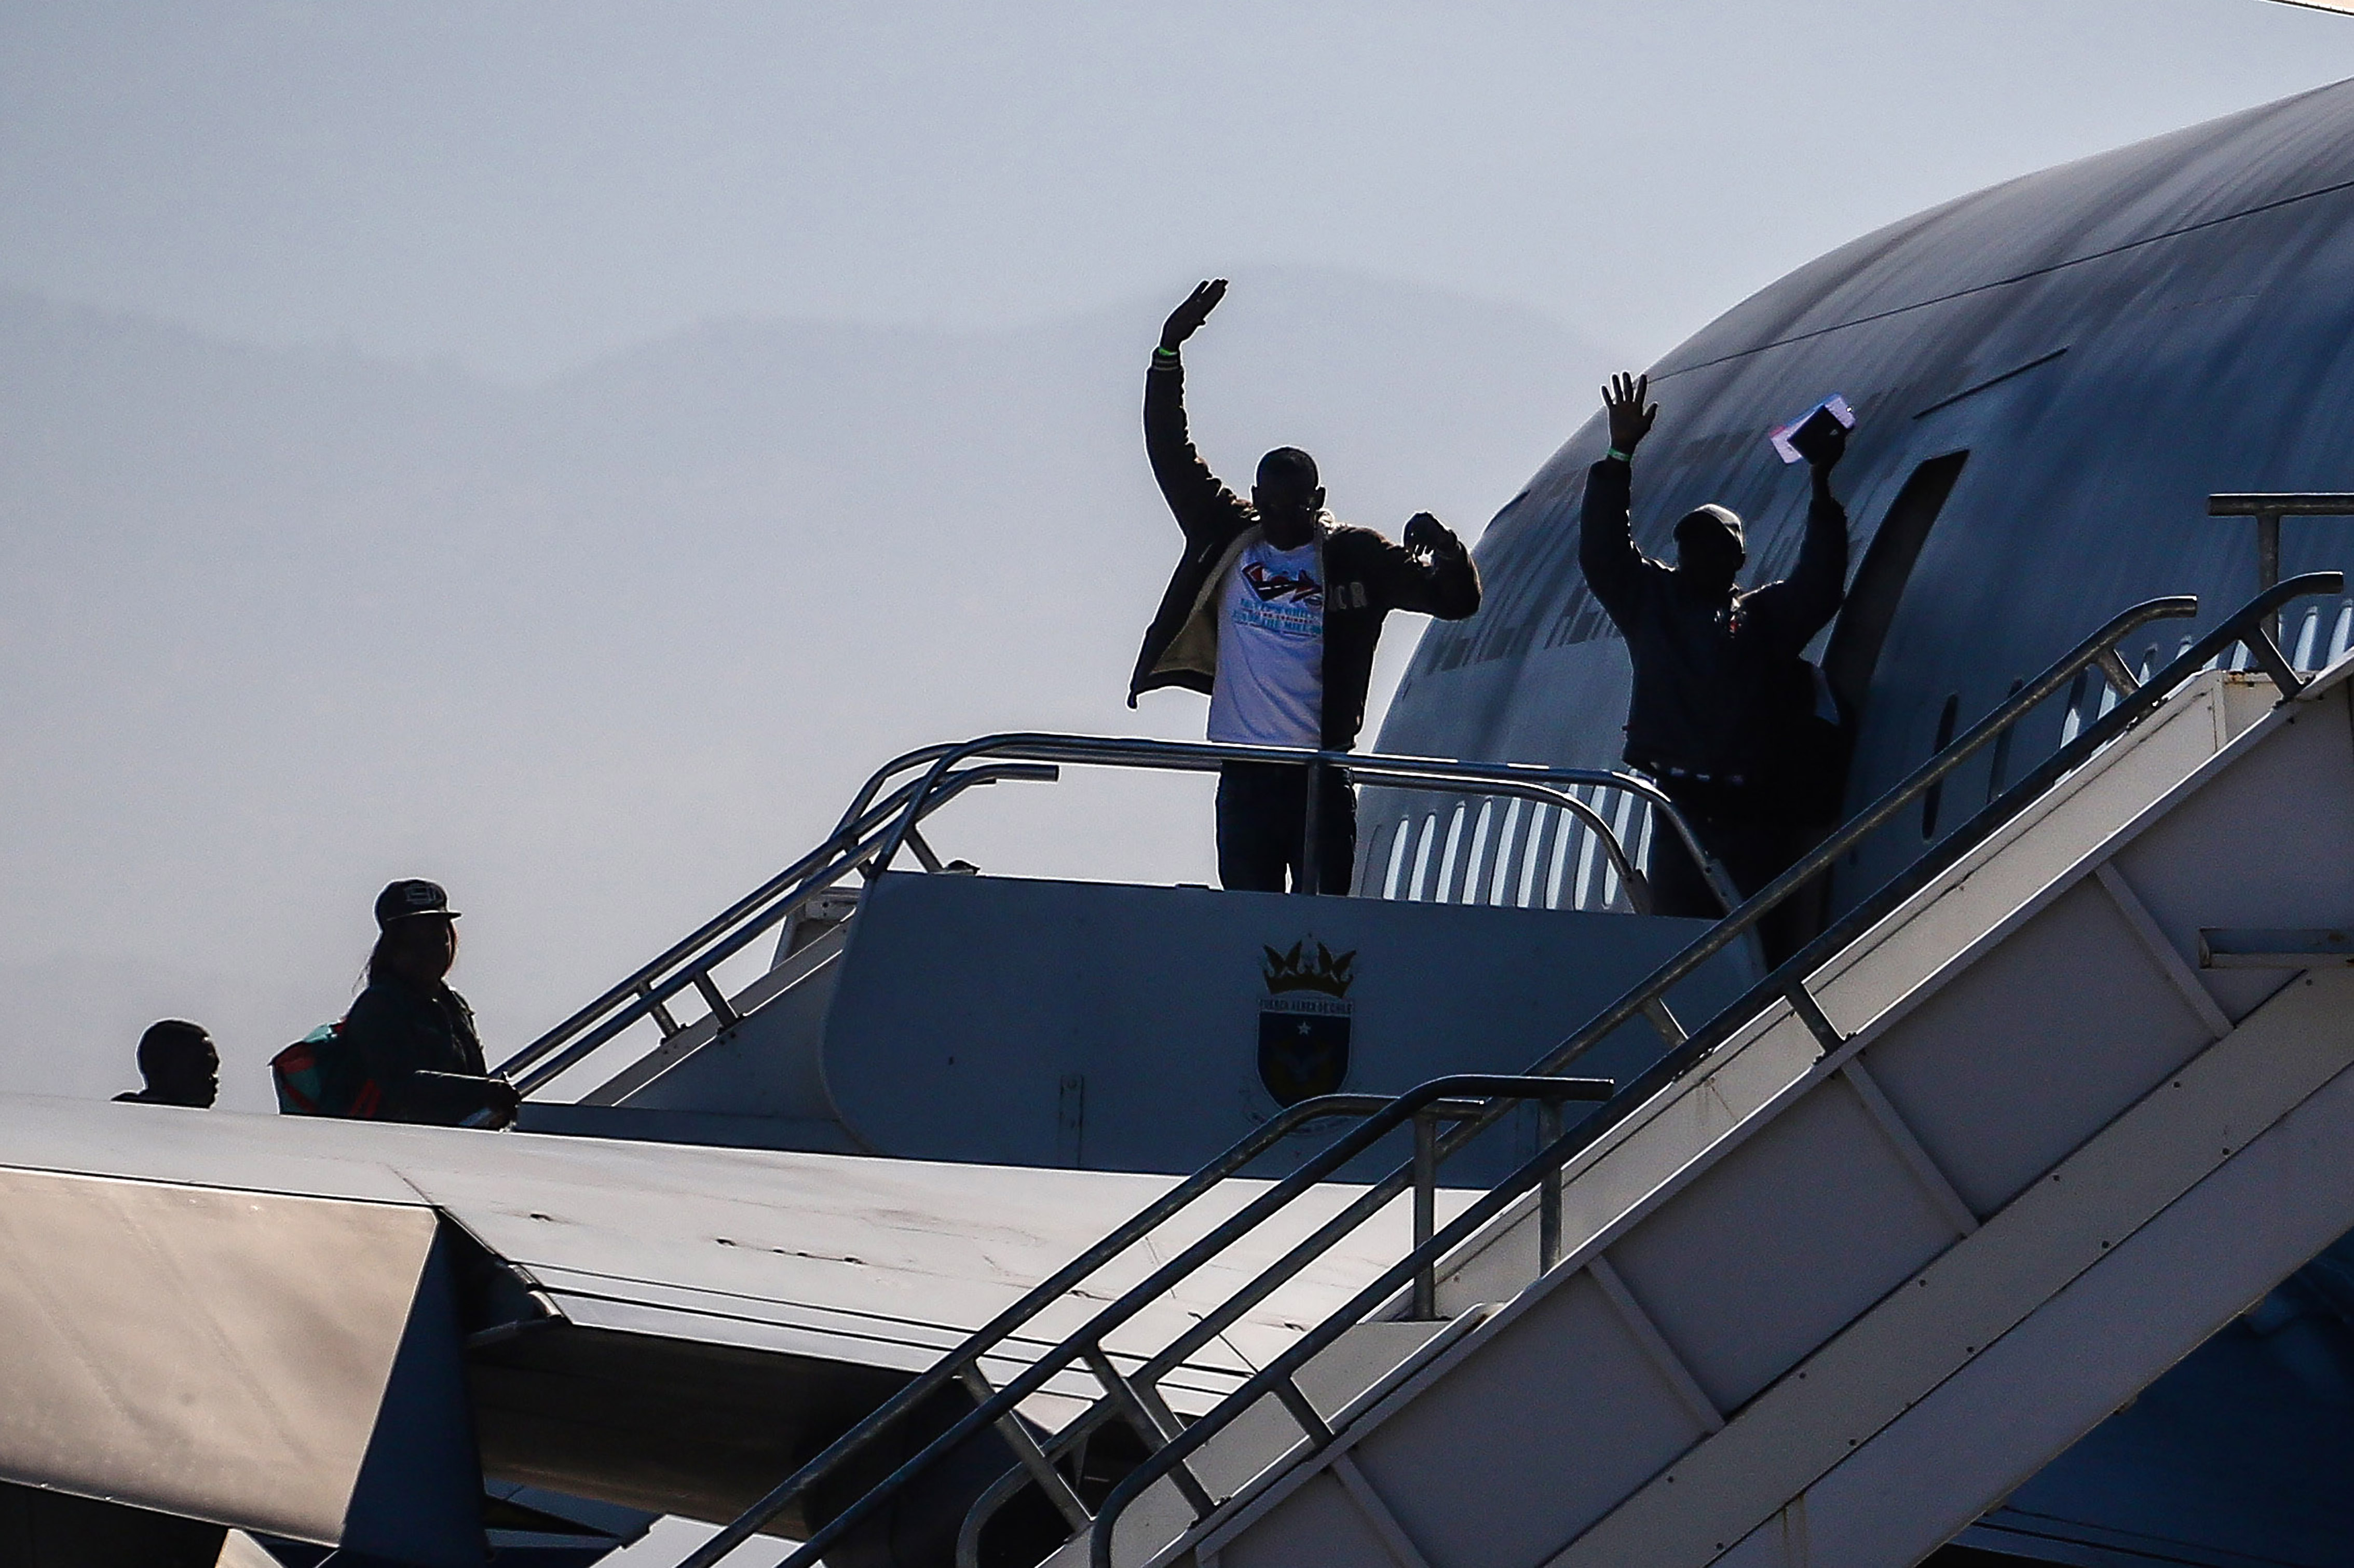 07 de Noviembre de 2018 / SANTIAGO Ciudadanos haitianos levantan sus brazos despidiéndose mientras abordan el avión de la Fach en el grupo 10 para regresar a su páis, en el marco del denominado "Plan Humanitario de Regreso Ordenado", para las personas que llevan meses o años en Chile y que por dificultades económicas no les fue posible estabilizarse en el país. FOTO: HANS SCOTT / AGENCIAUNO